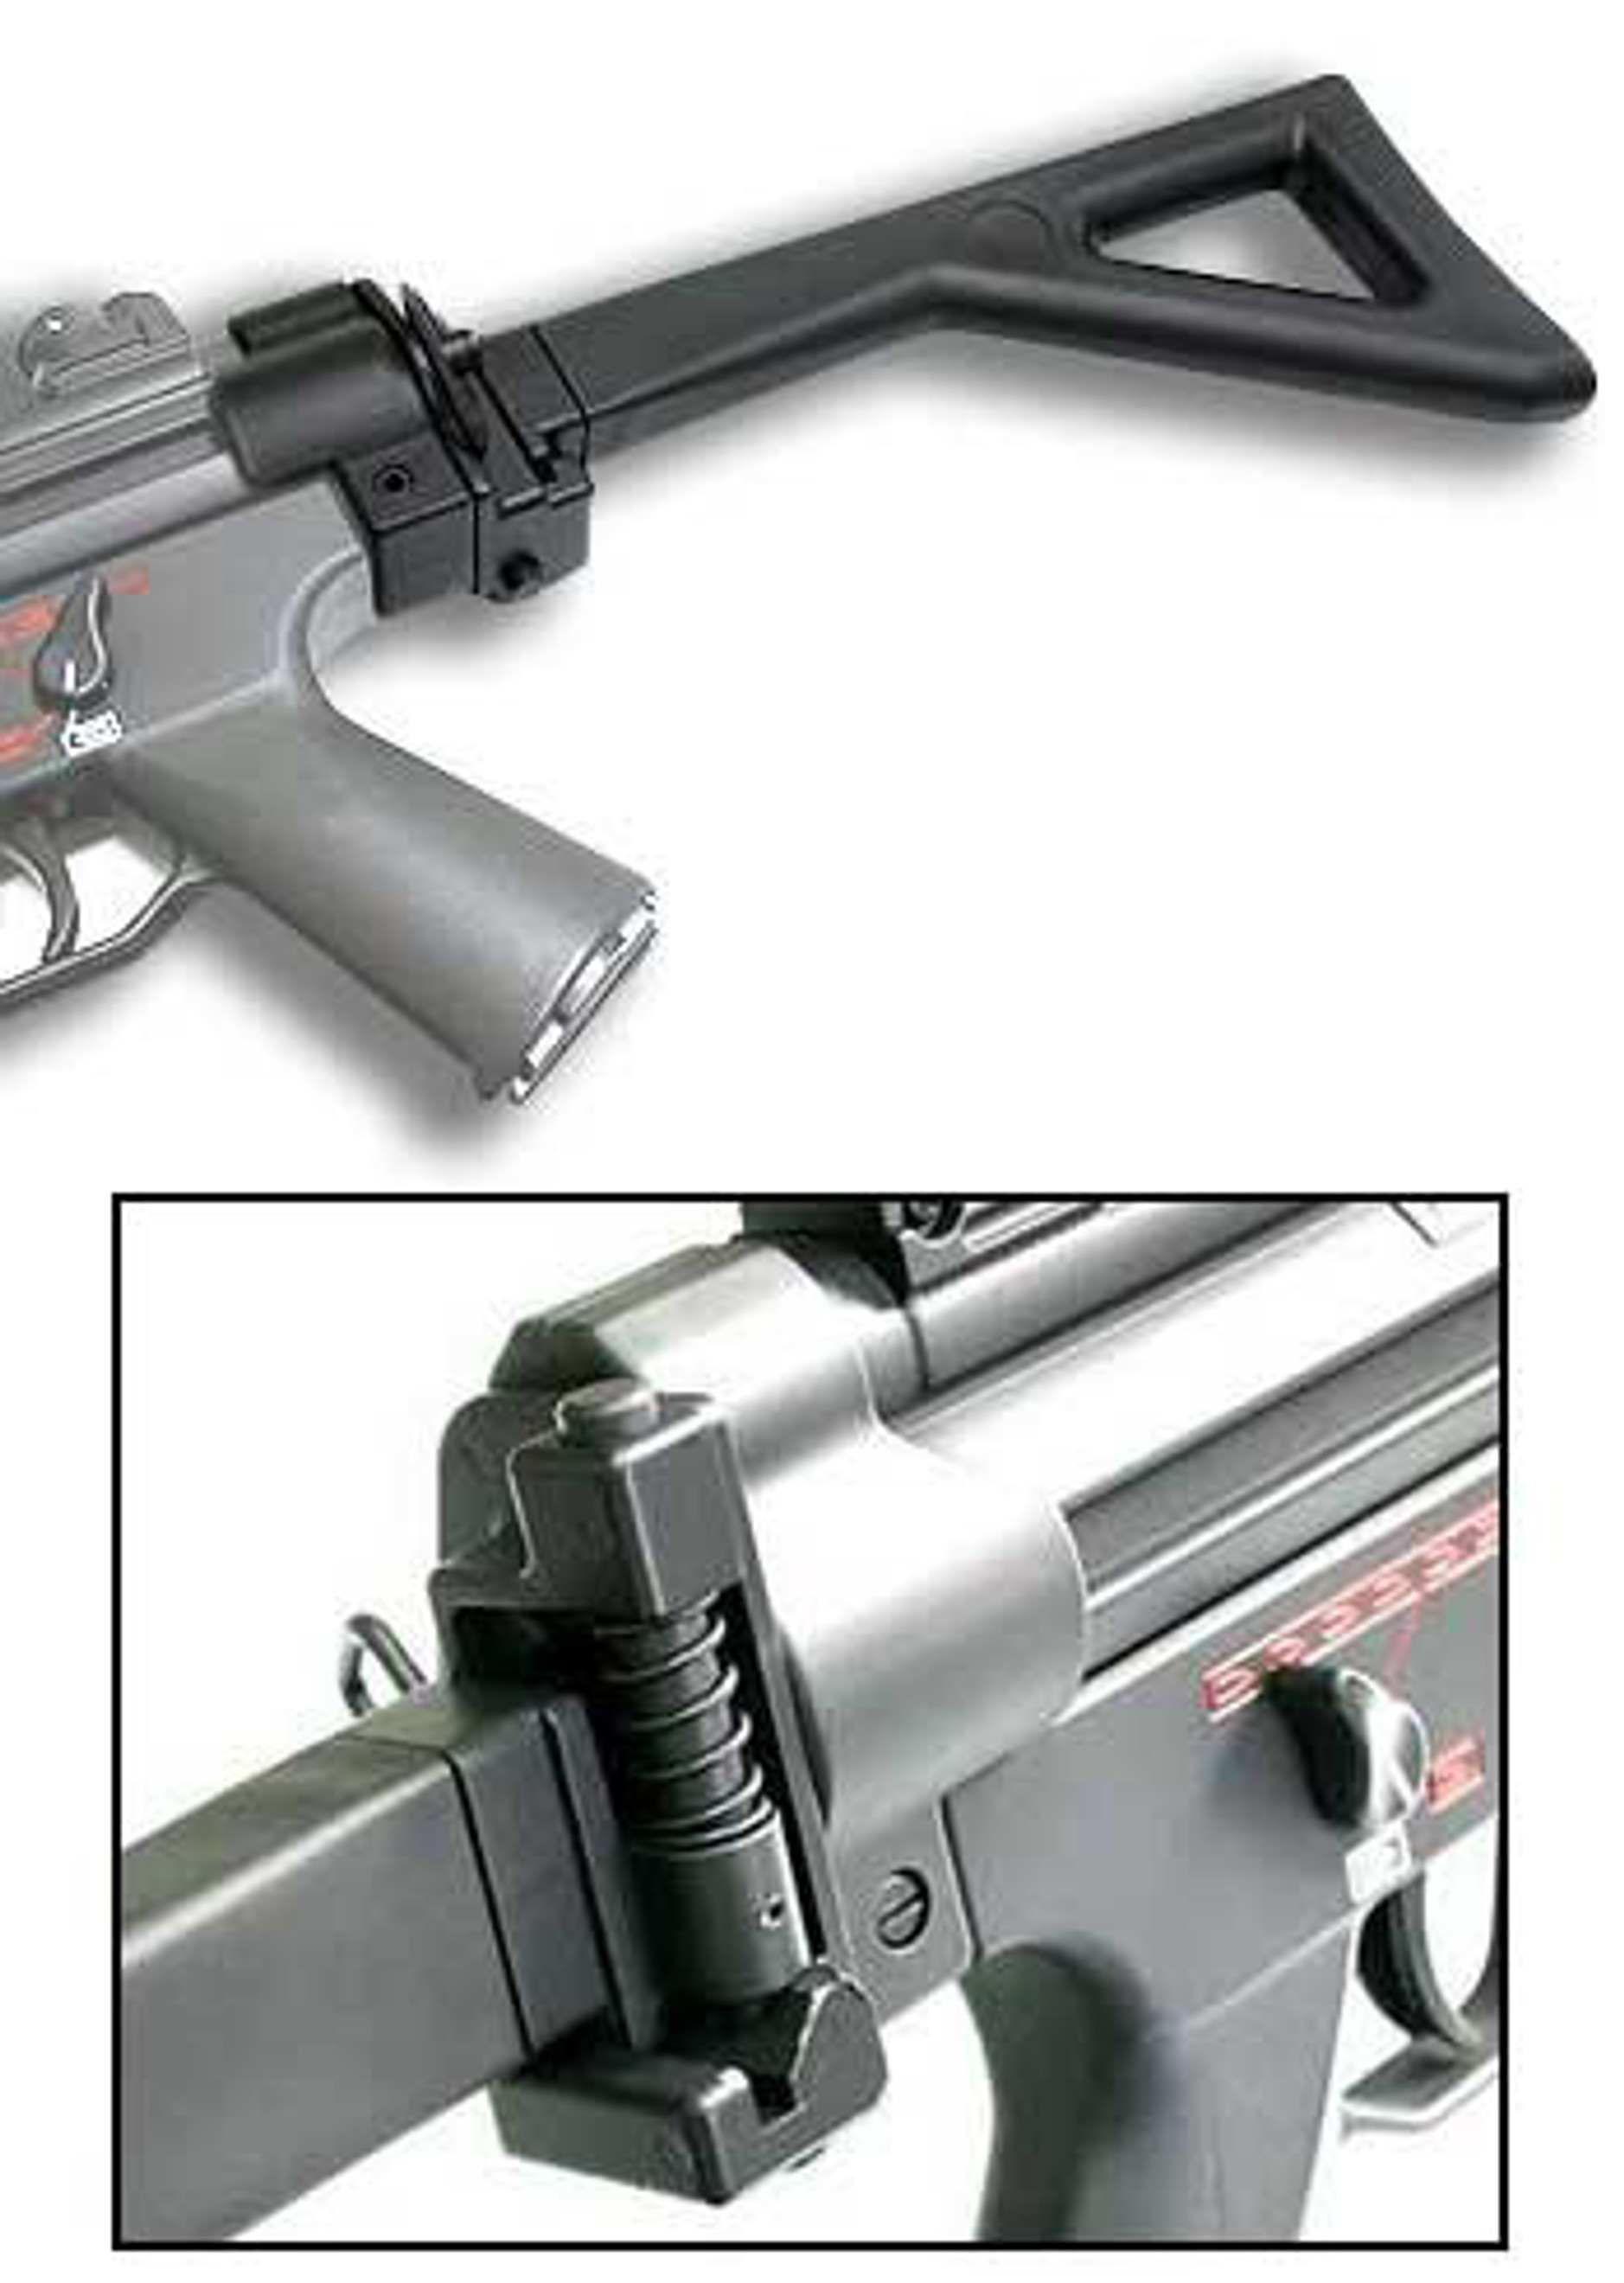 ICS Side Folding Stock For MP5 A4 / A5 / SD5 / SD6 series Airsoft AEG Guns